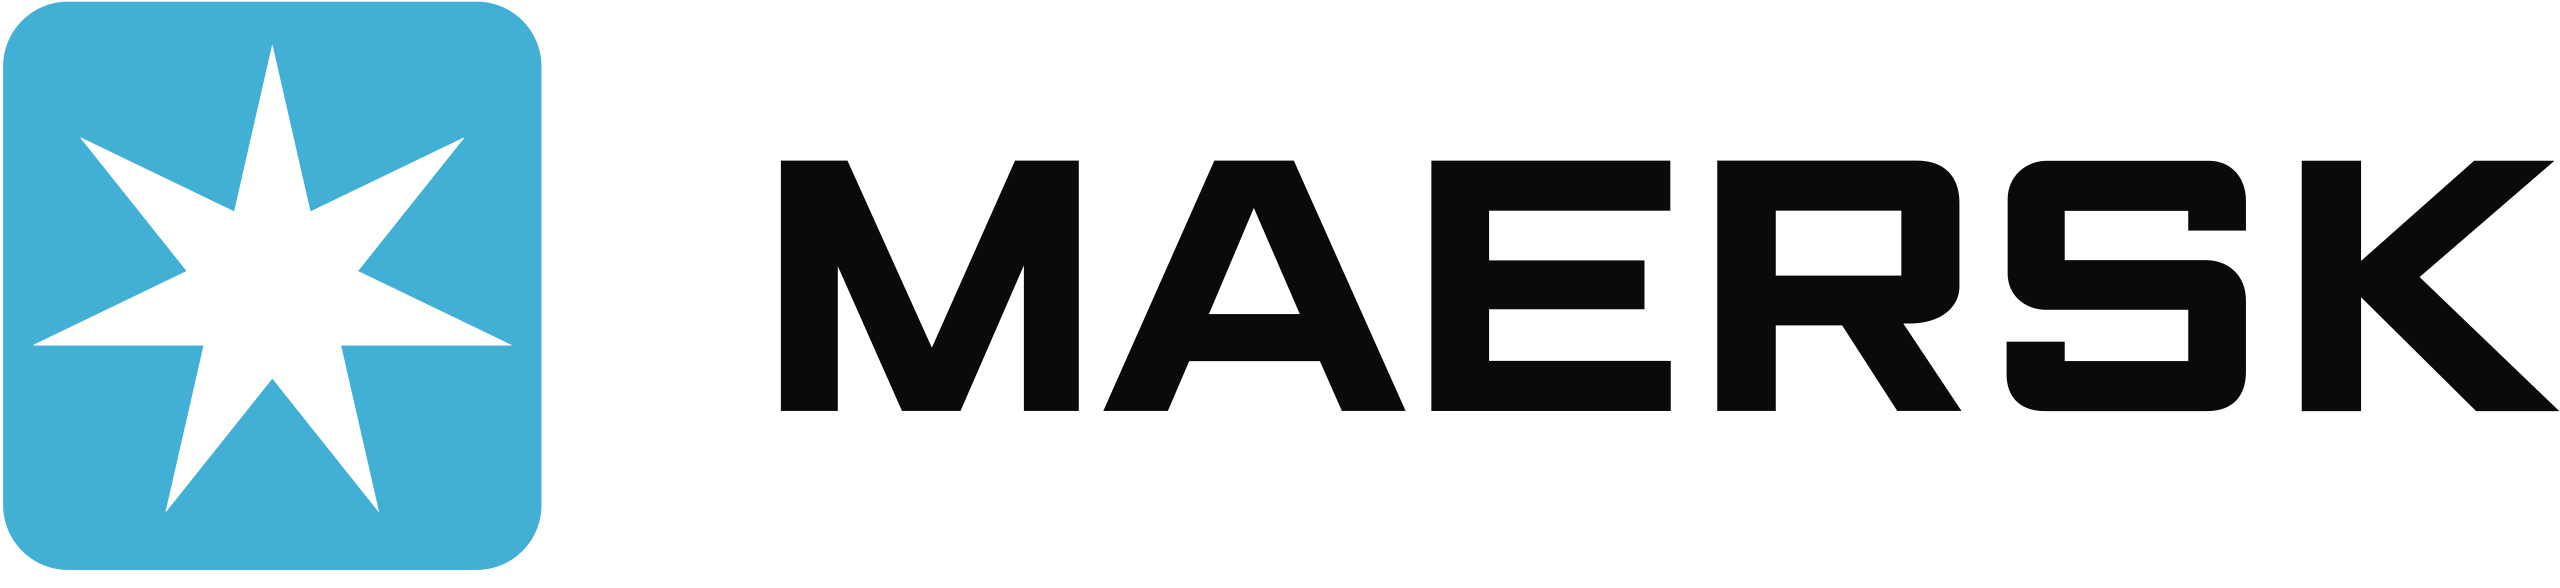 Logotipo de Maersk